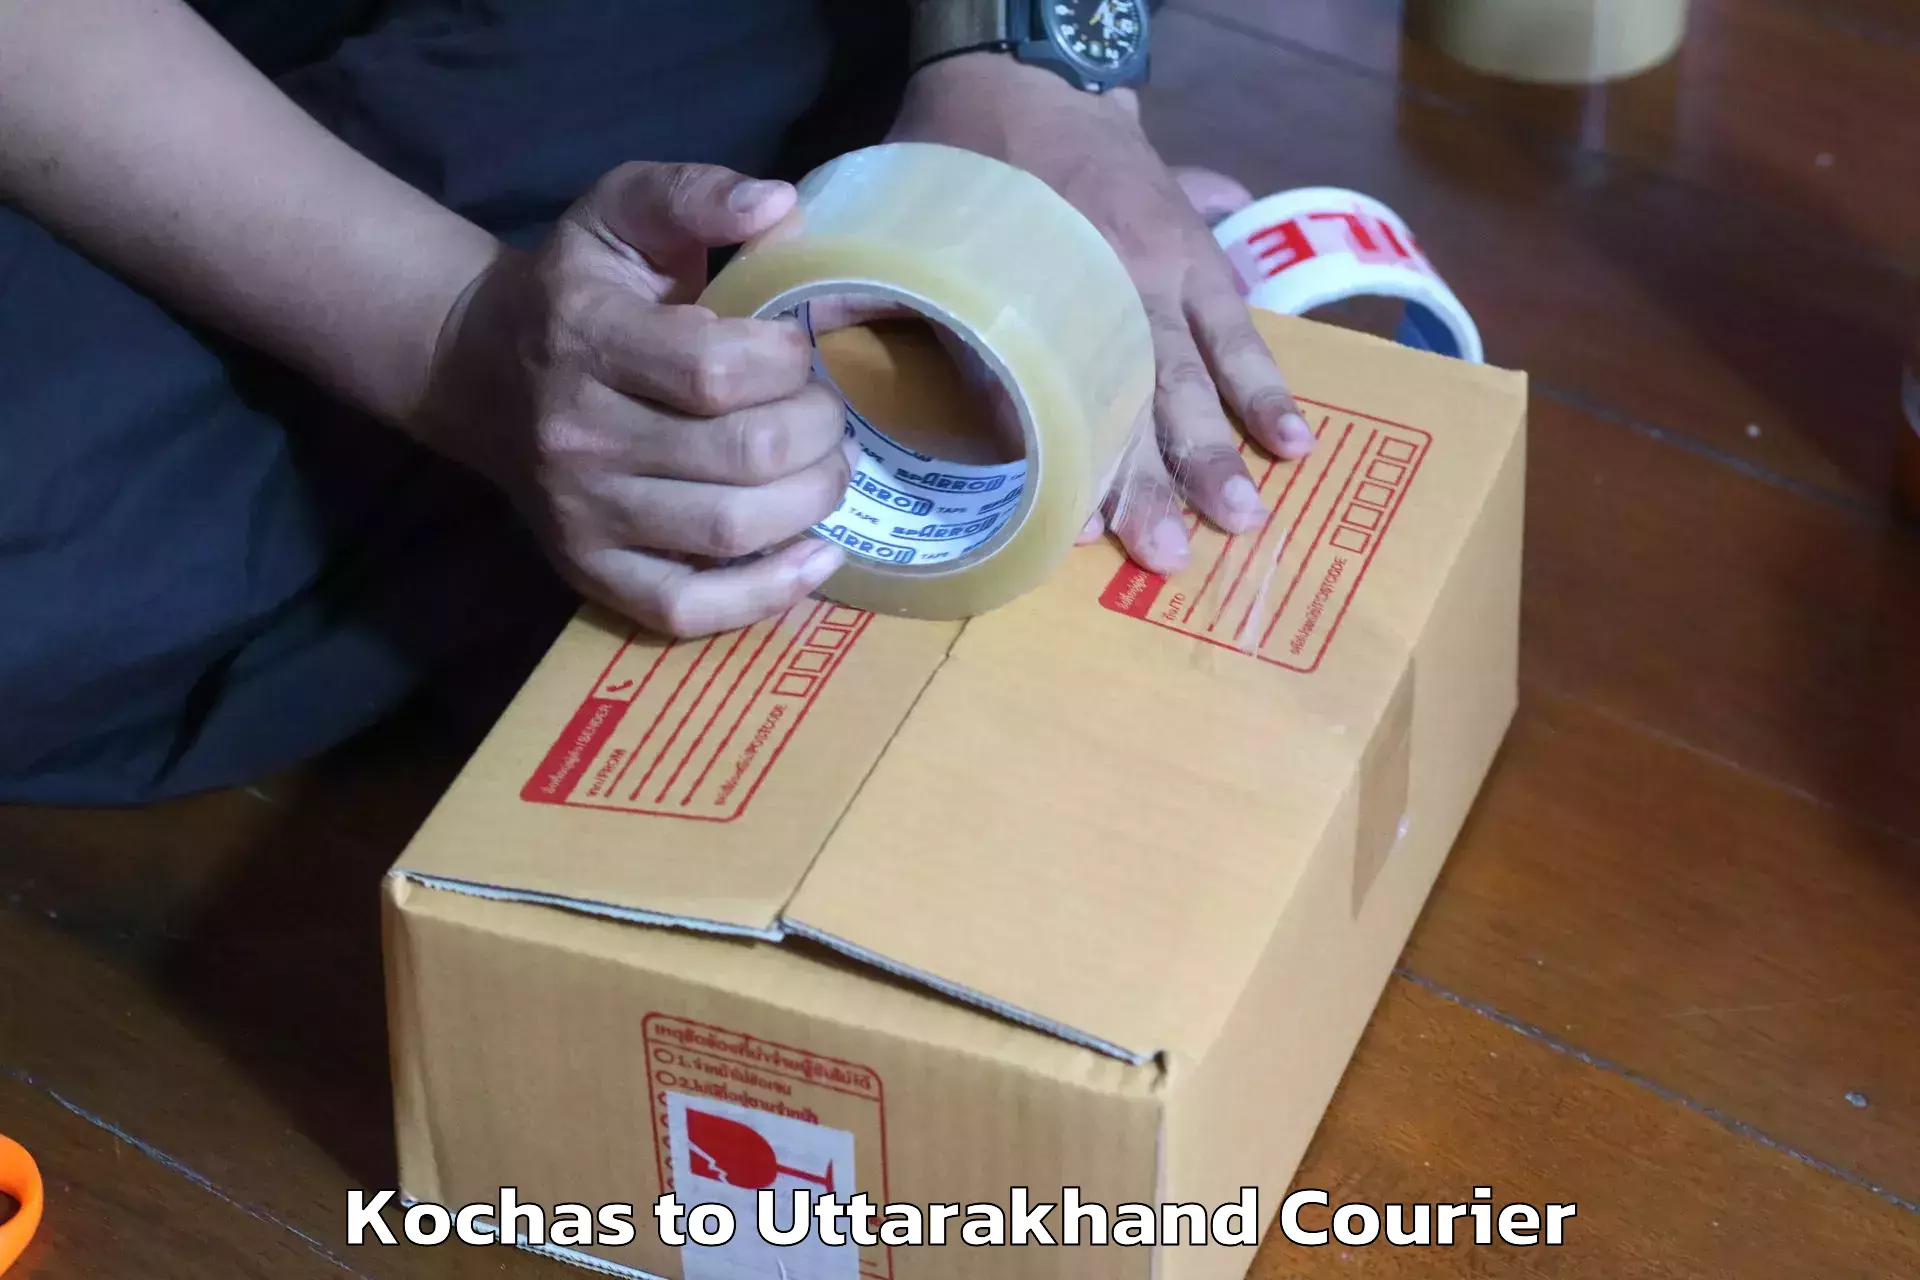 Furniture delivery service Kochas to Kotdwara